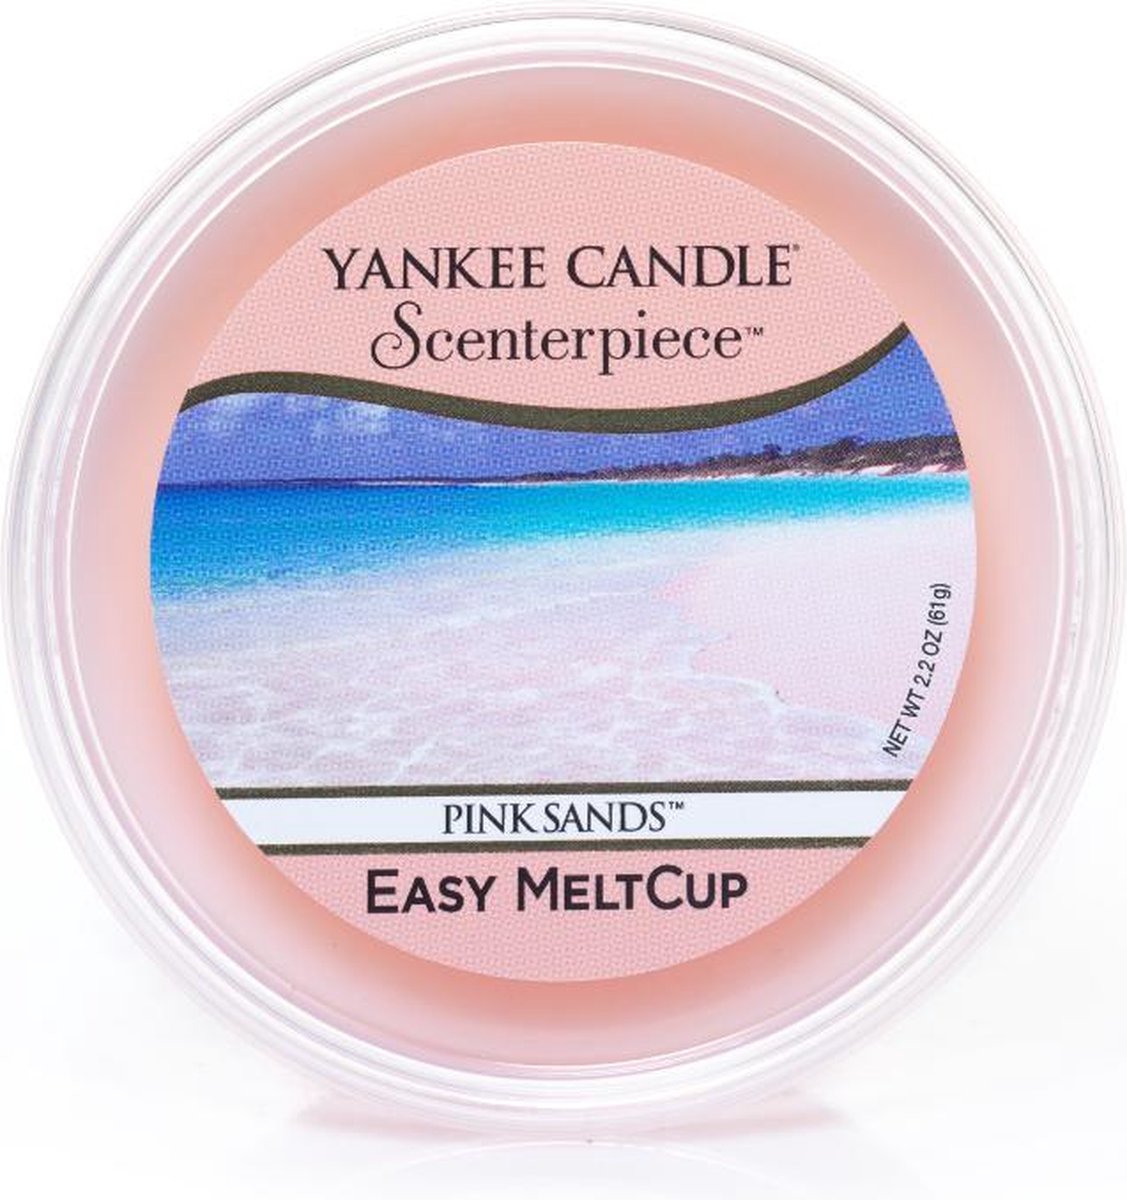 Yankee Candle - Pink Sands Scenterpiece Easy MeltCup ( růžové písky ) - Vonný vosk do aromalampy - 61.0g